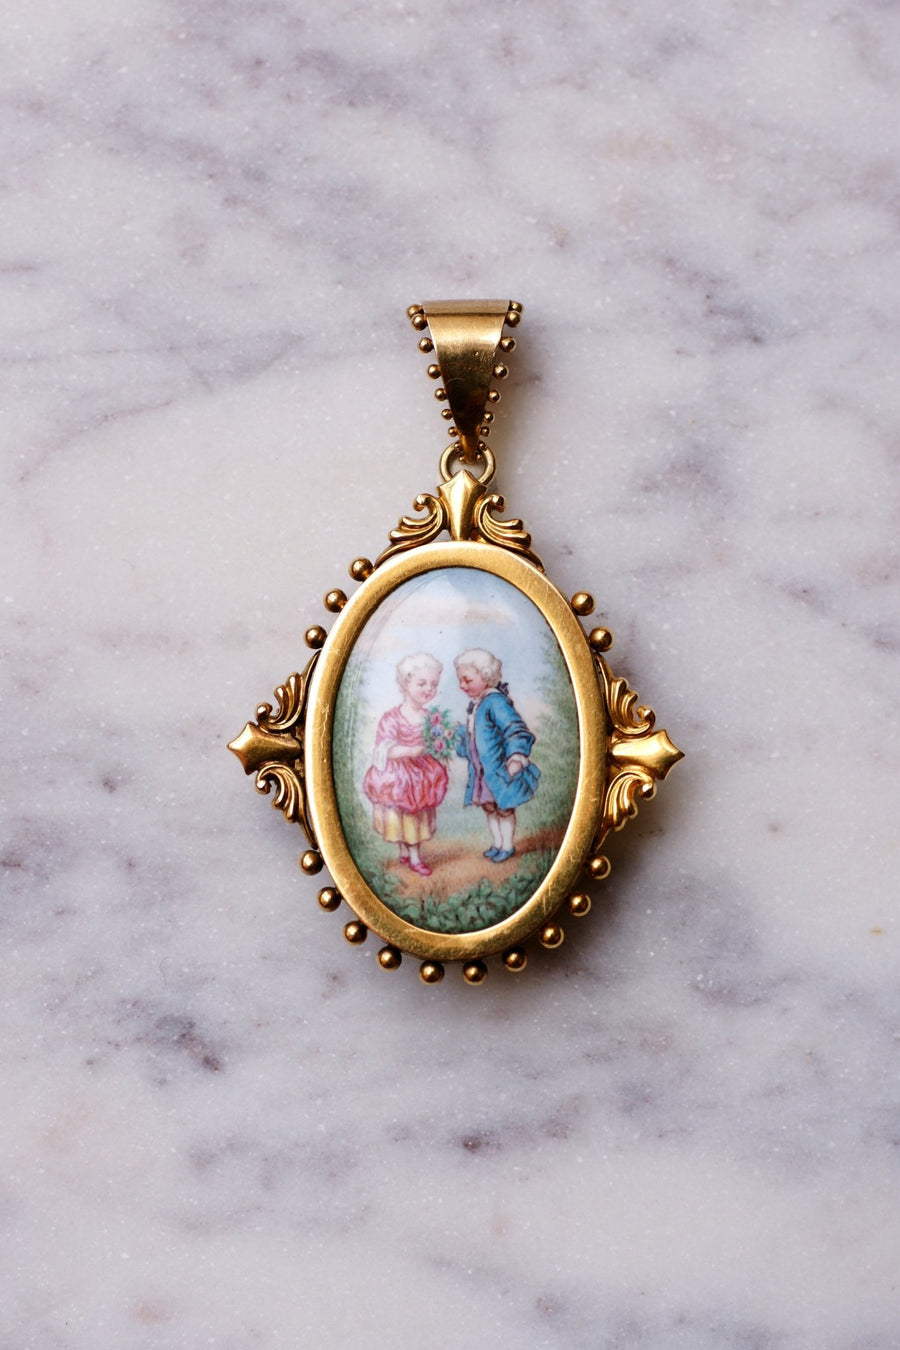 Pendentif Broche ancien en or et miniature sur porcelaine - Galerie Pénélope